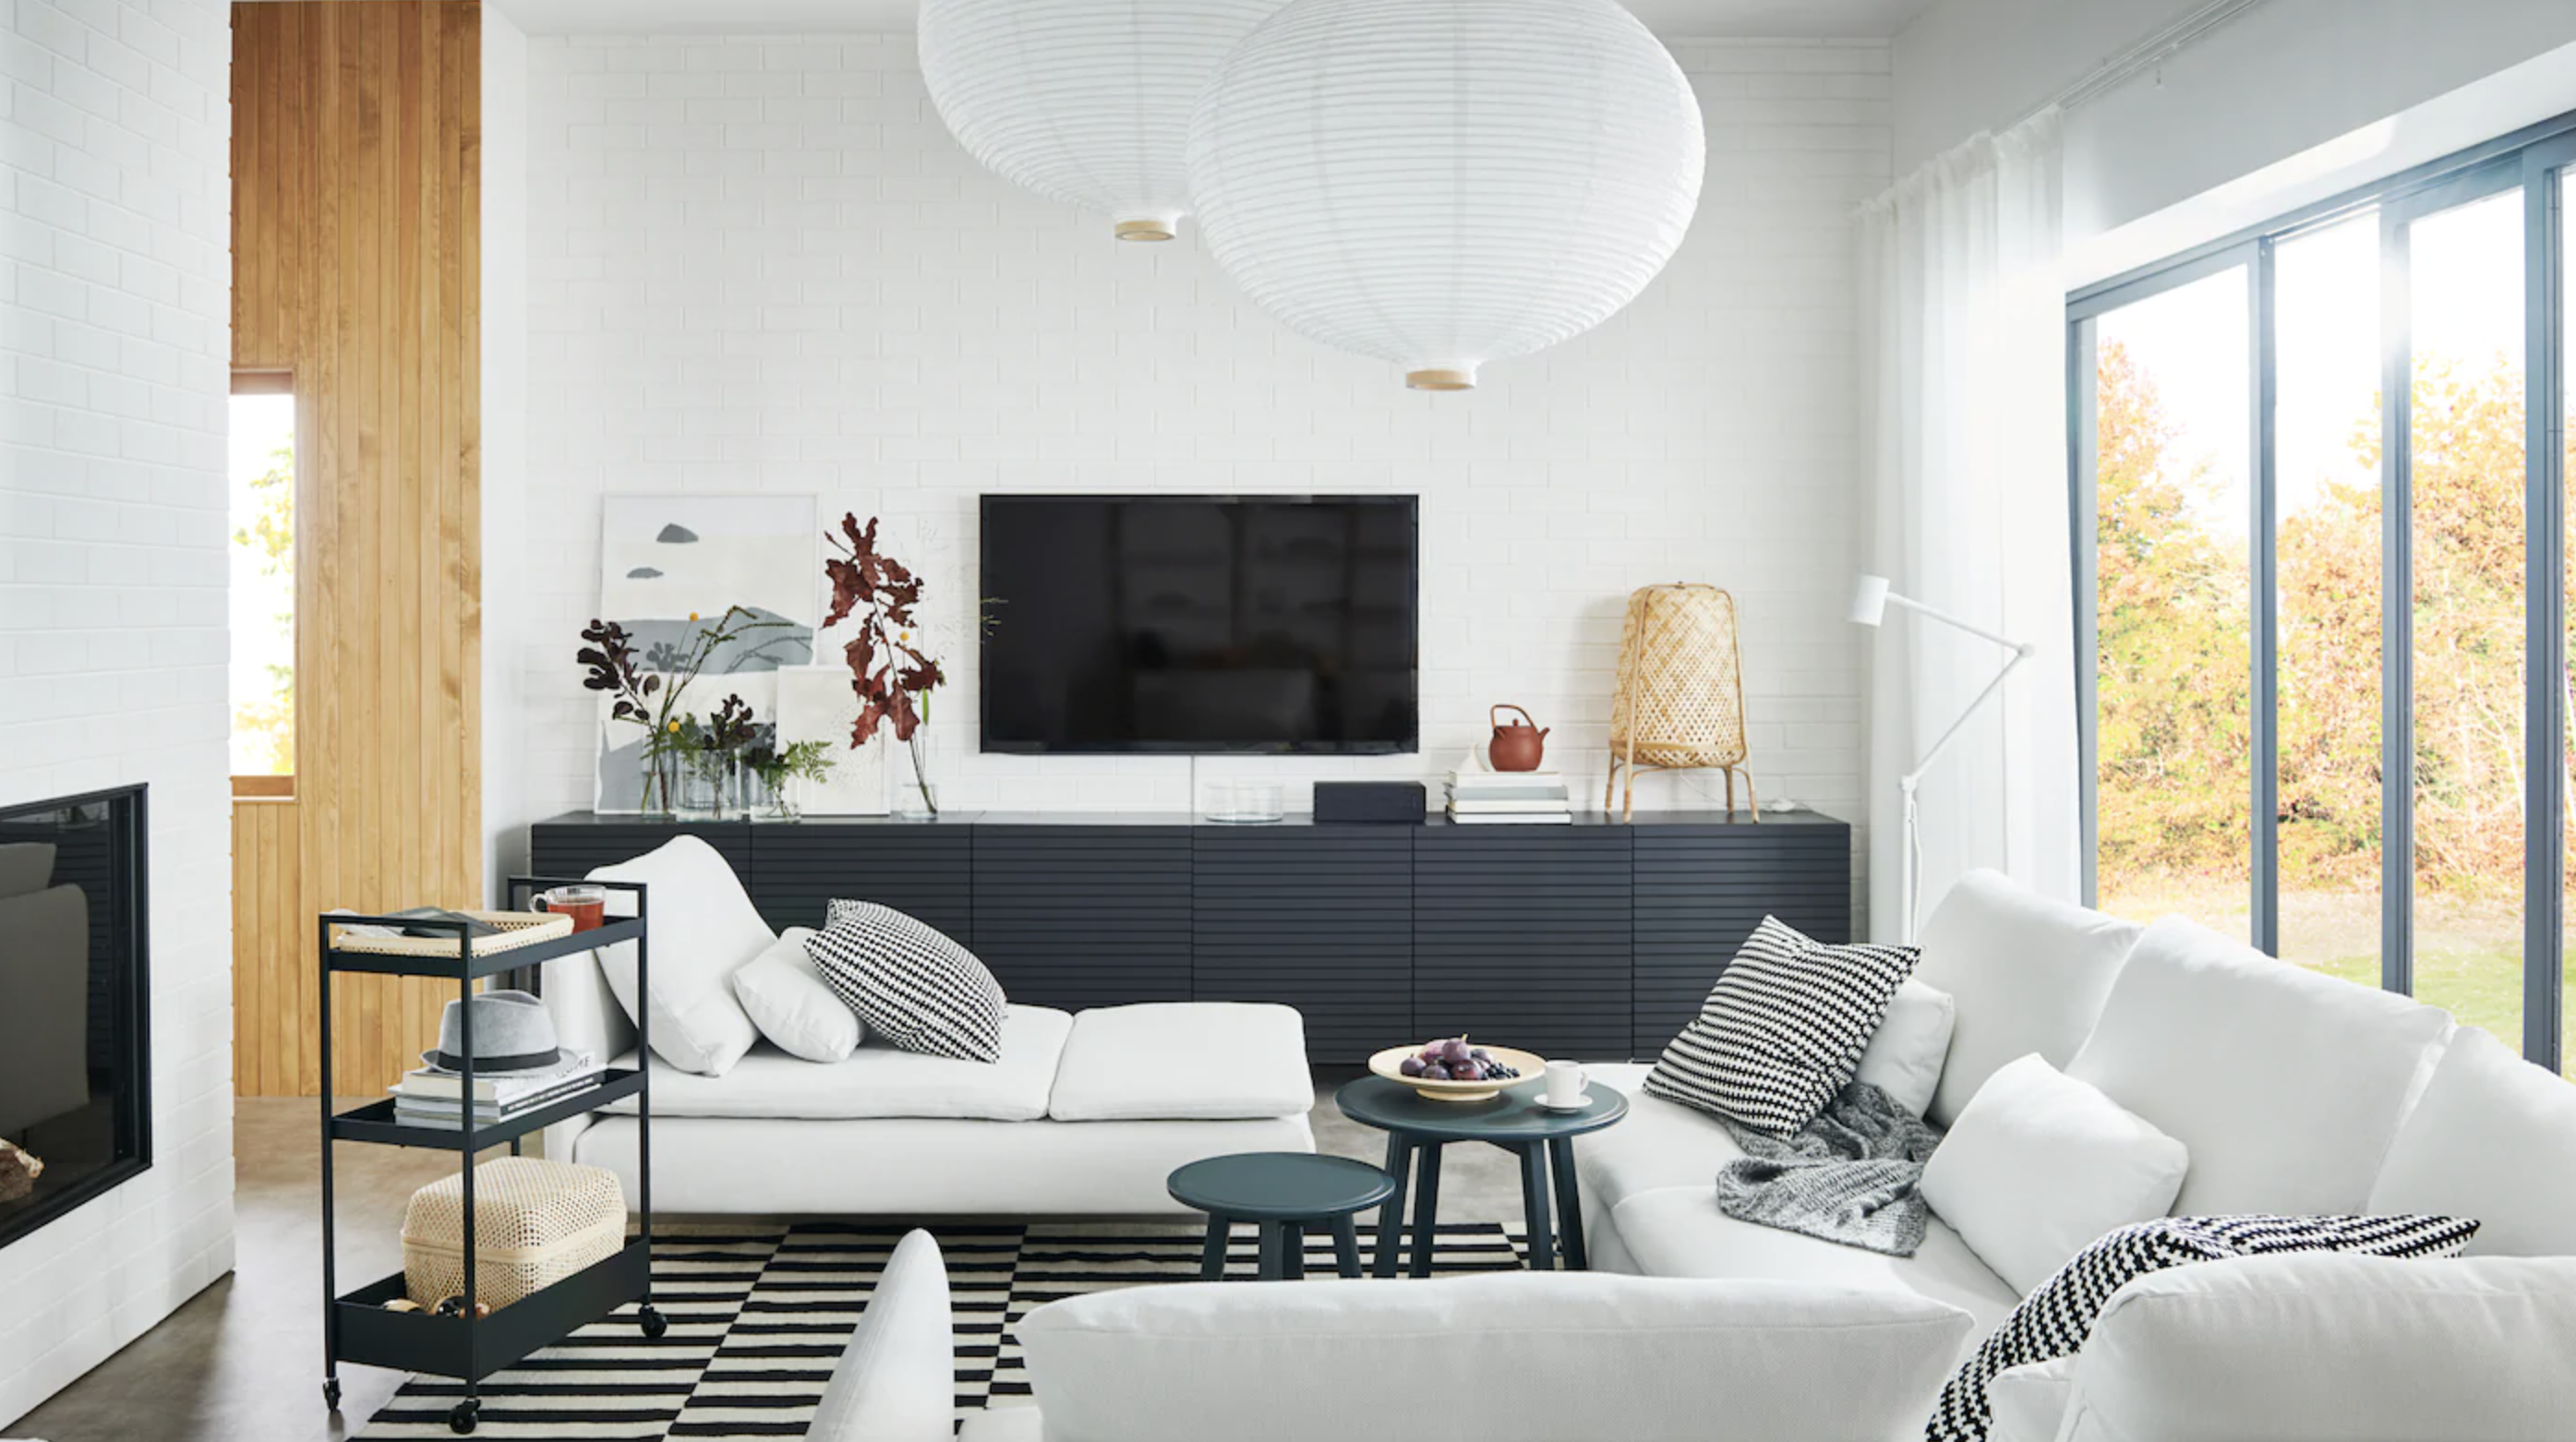 Living room TV ideas